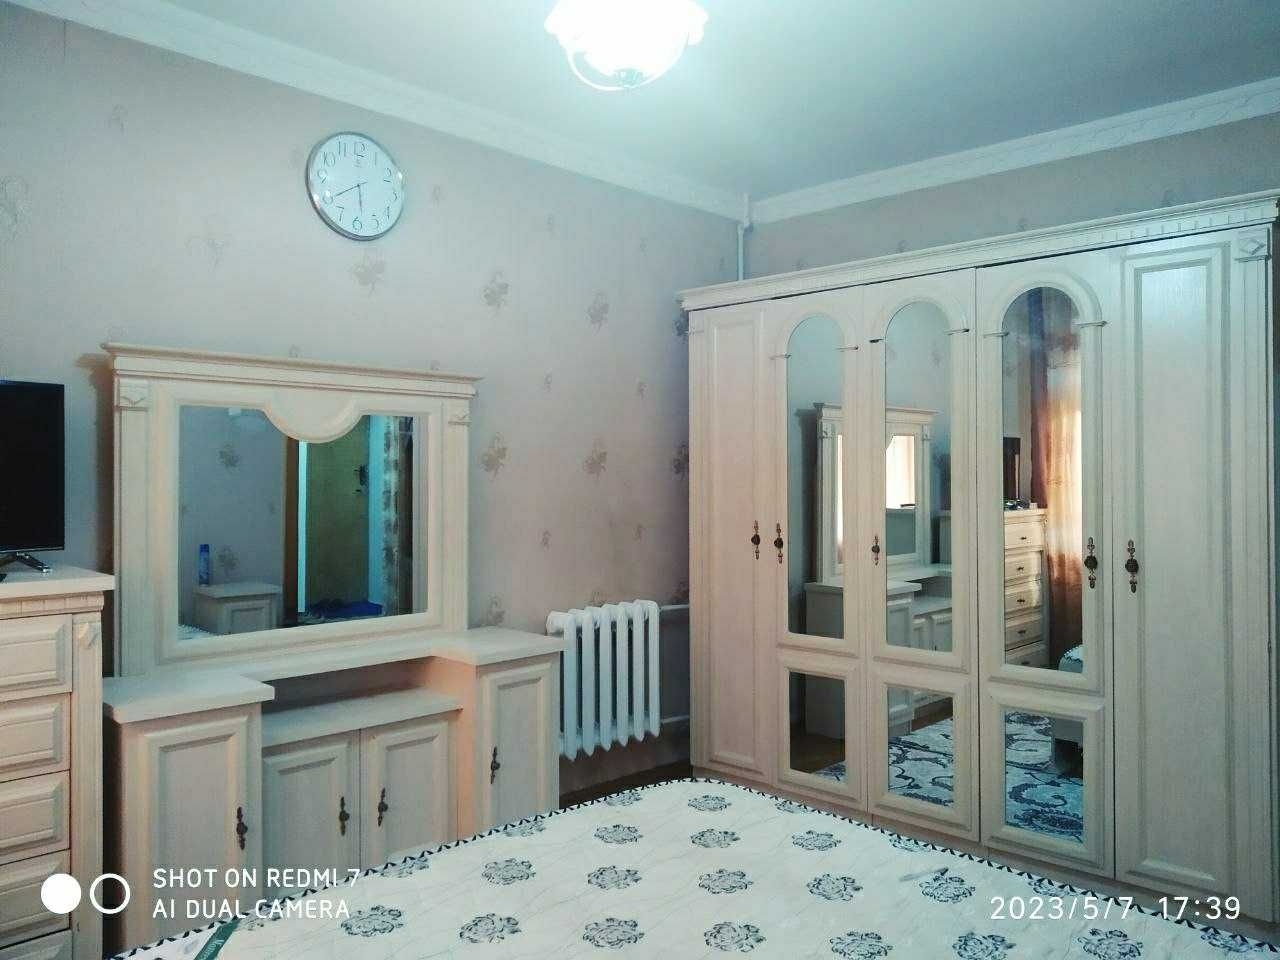 Квартира 3хоналик арендага берилади барча жихозлари бор